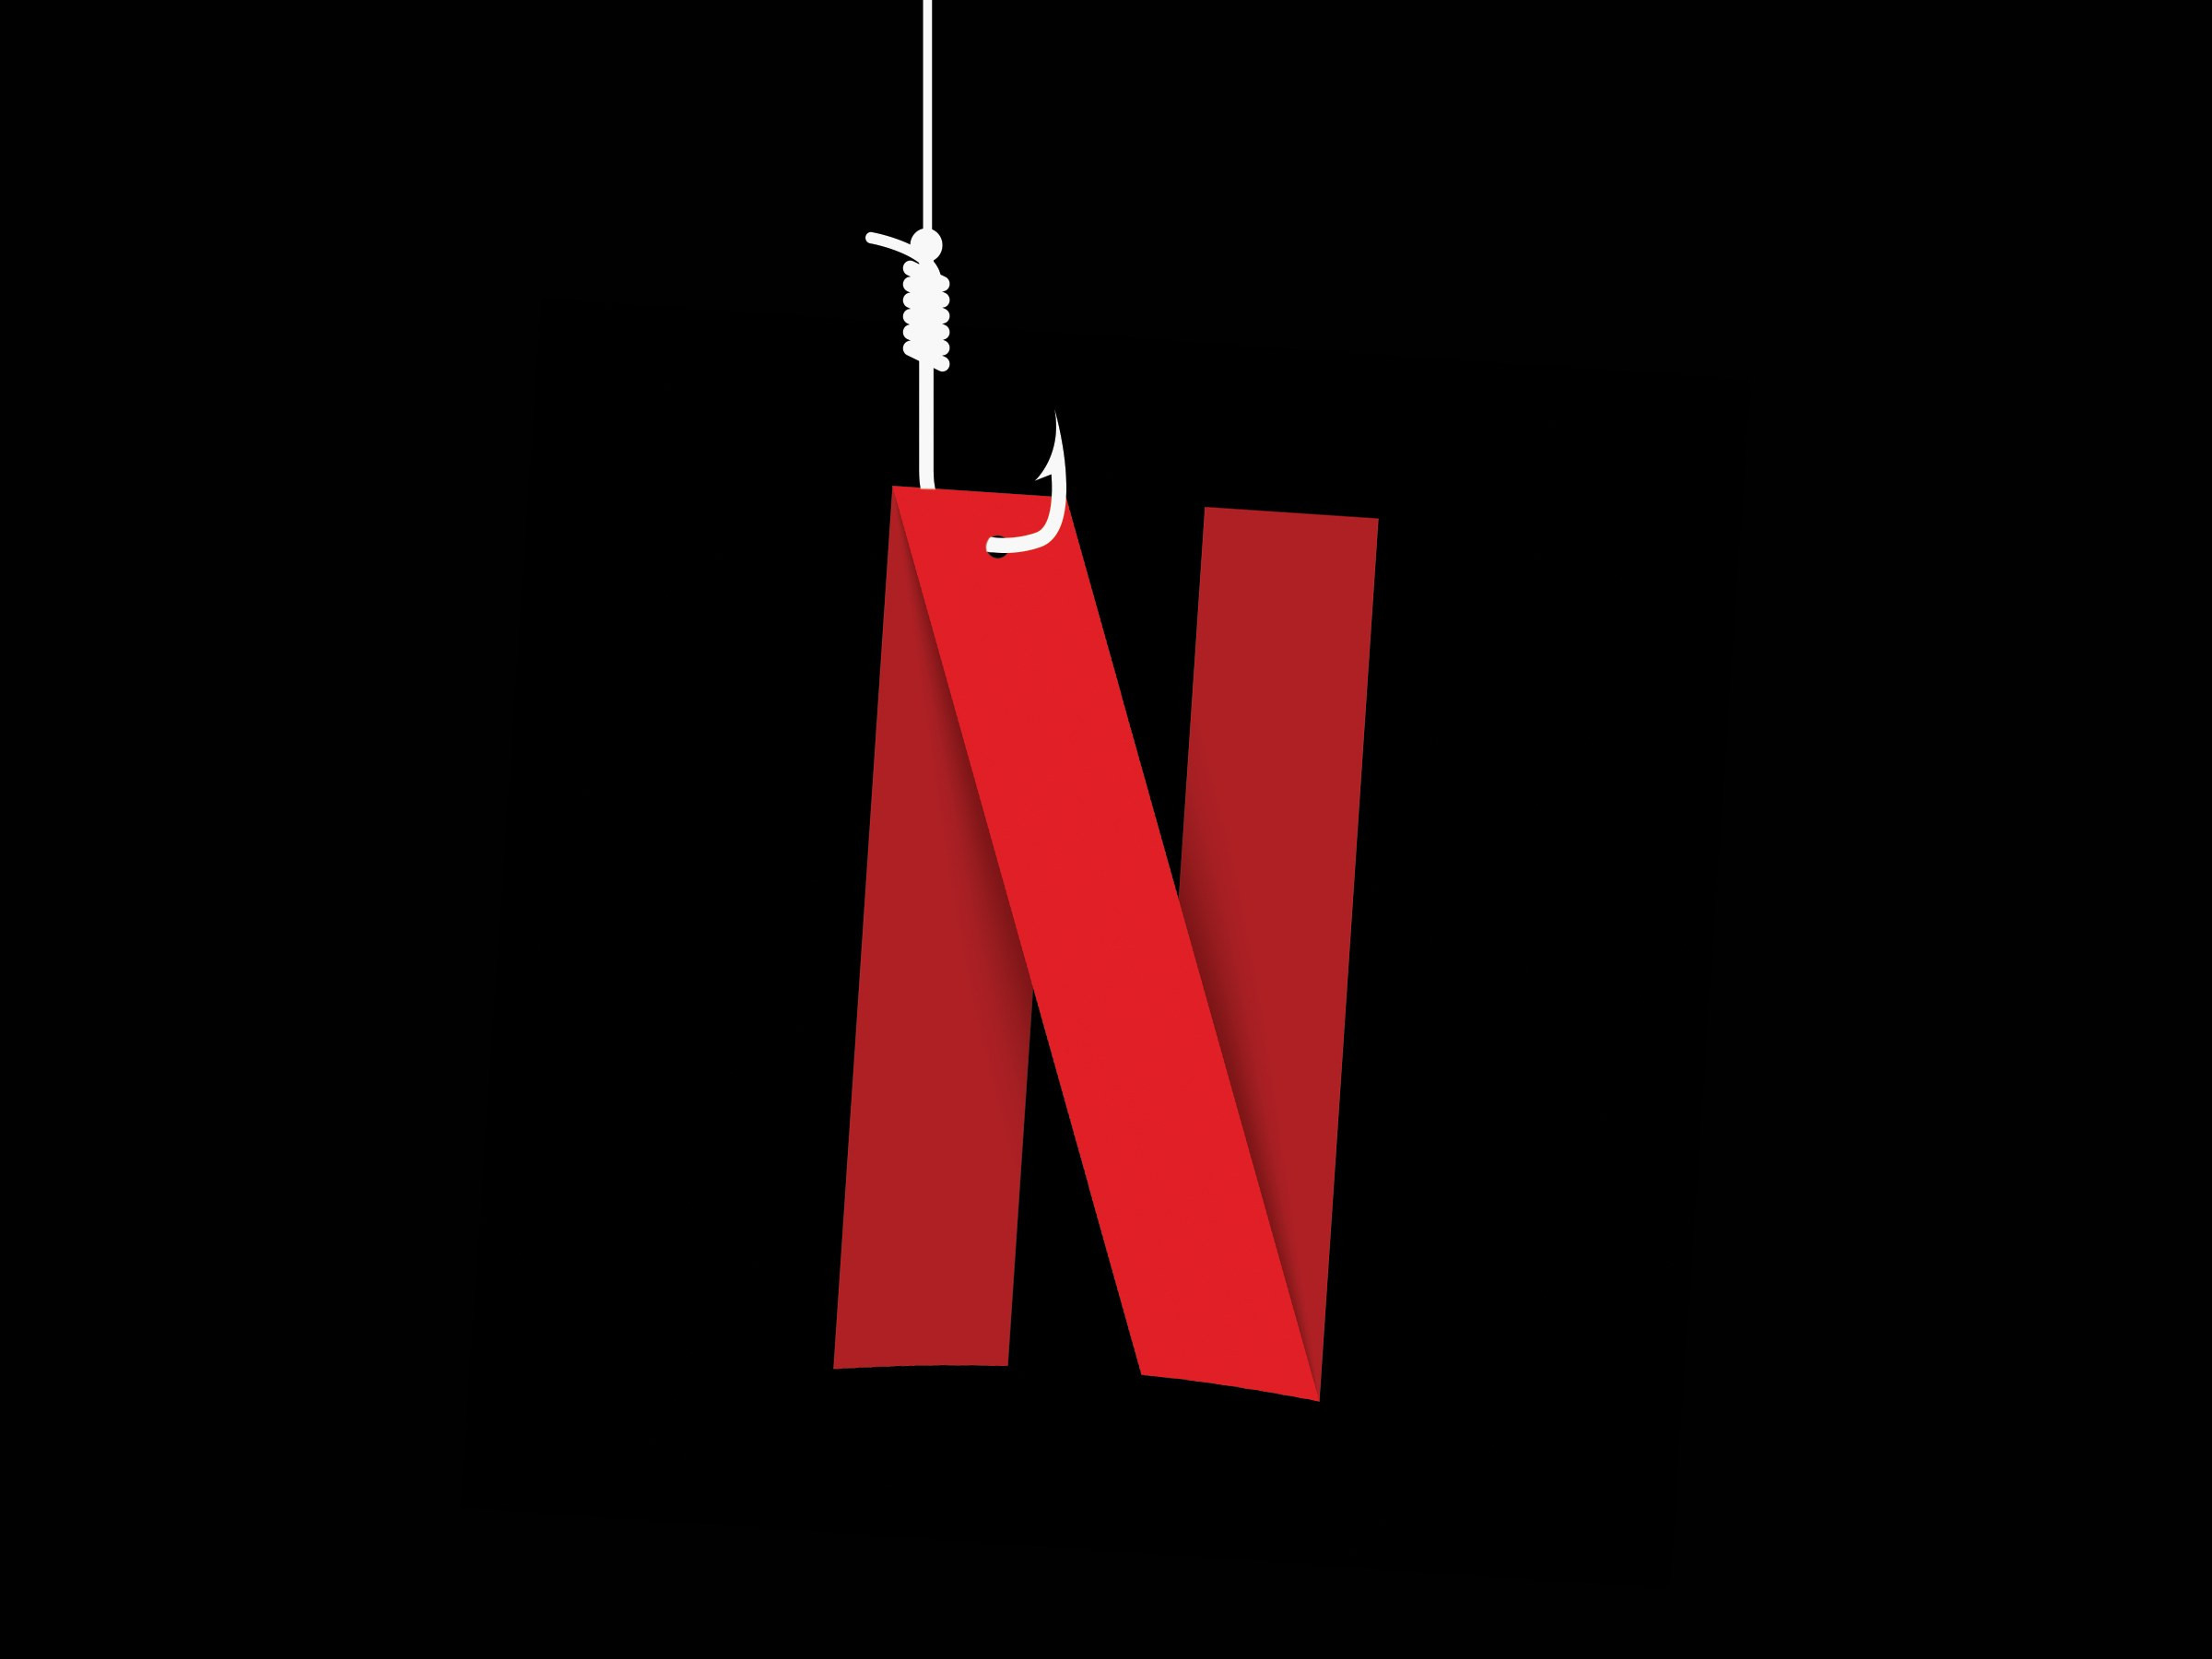 TBMM'de Netflix'e erişim engeli getirildi